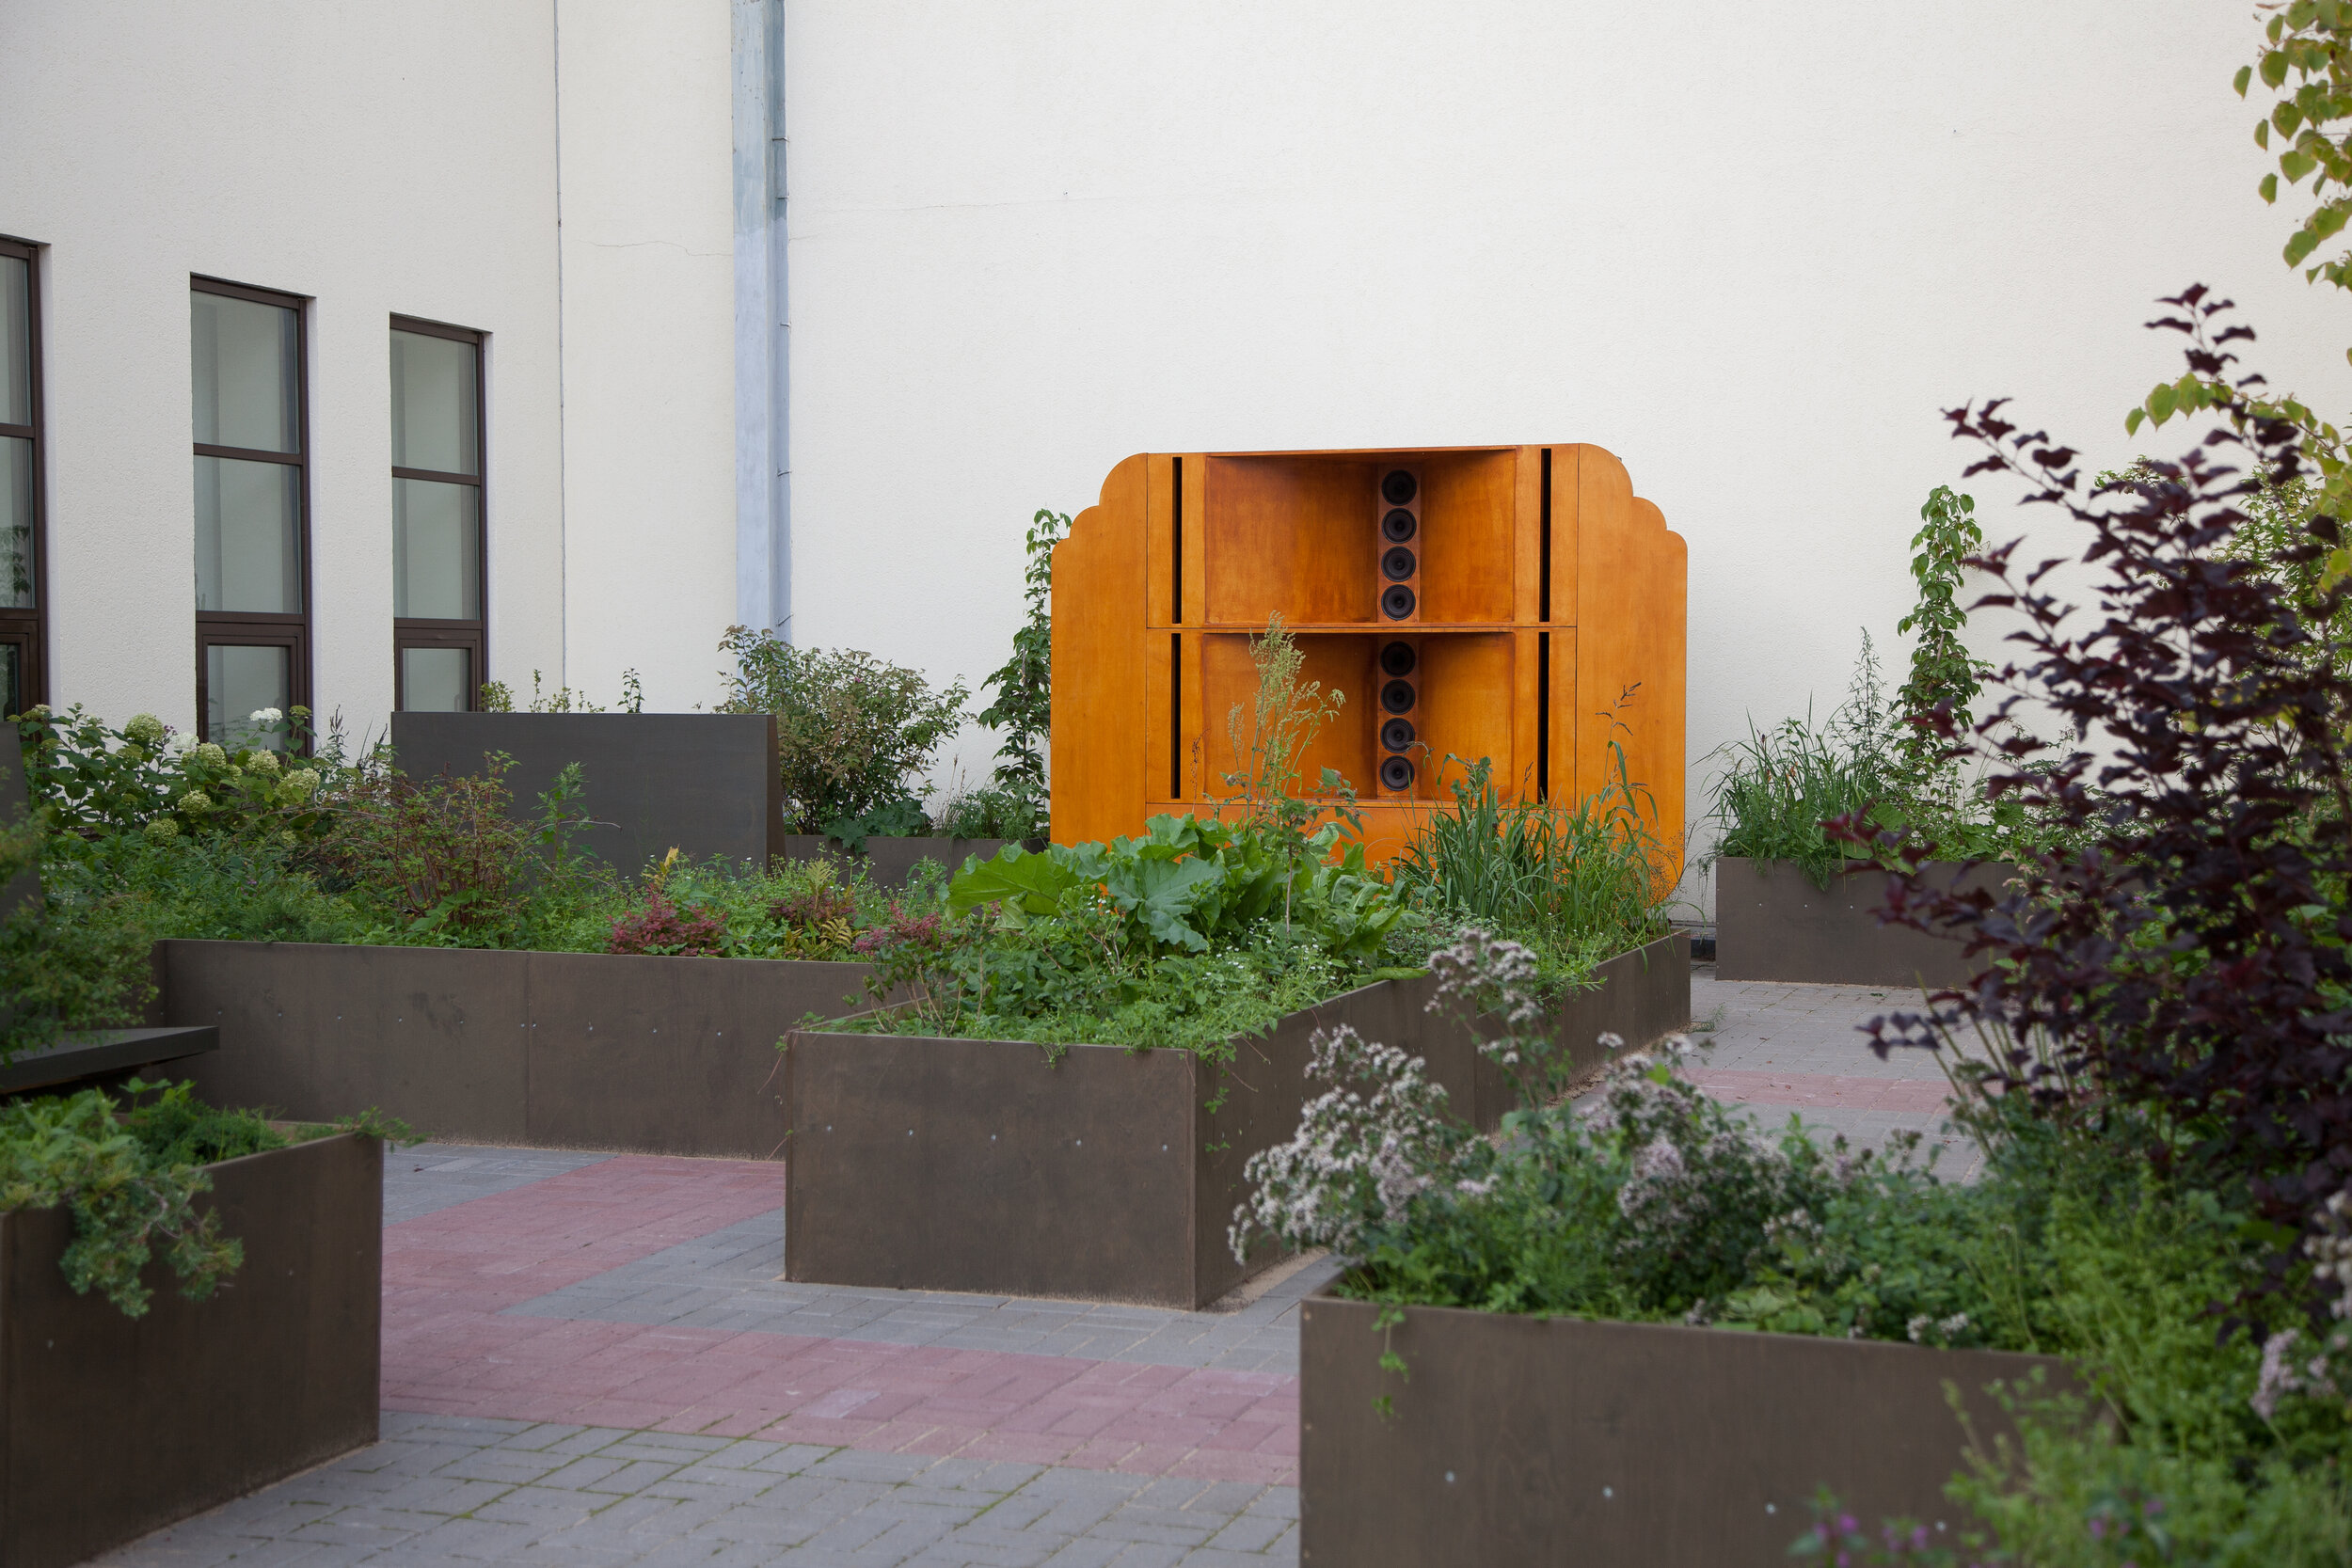 Alexey Korsi, Artem Filatov – Name garden Project in Nizhny Novgorod crematorium (2019)